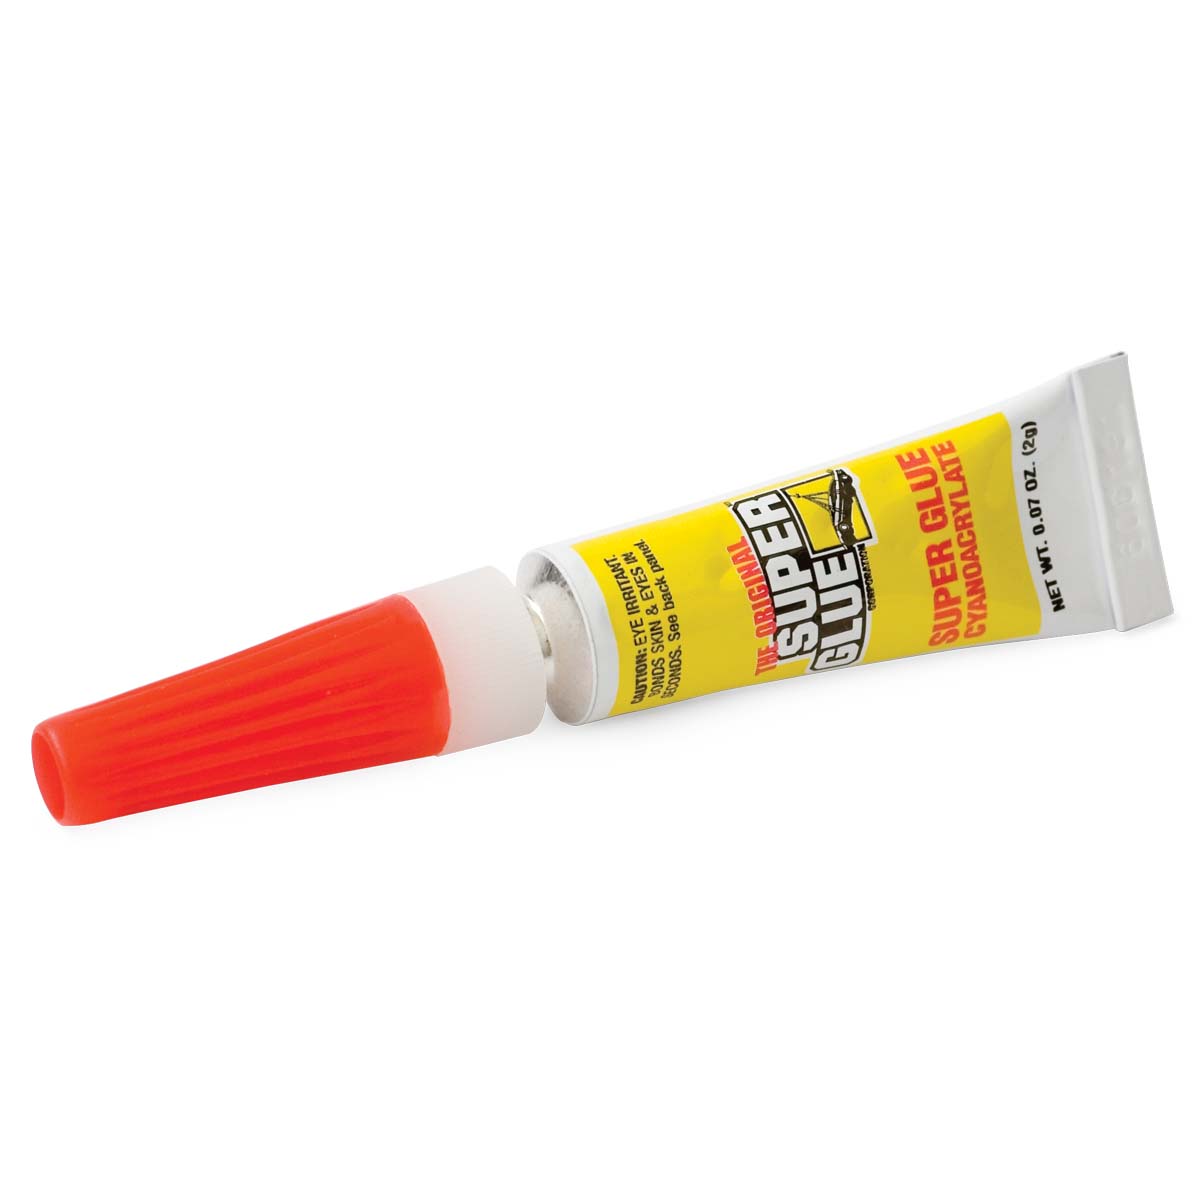 Super Glue Pen  Super Glue Corporation